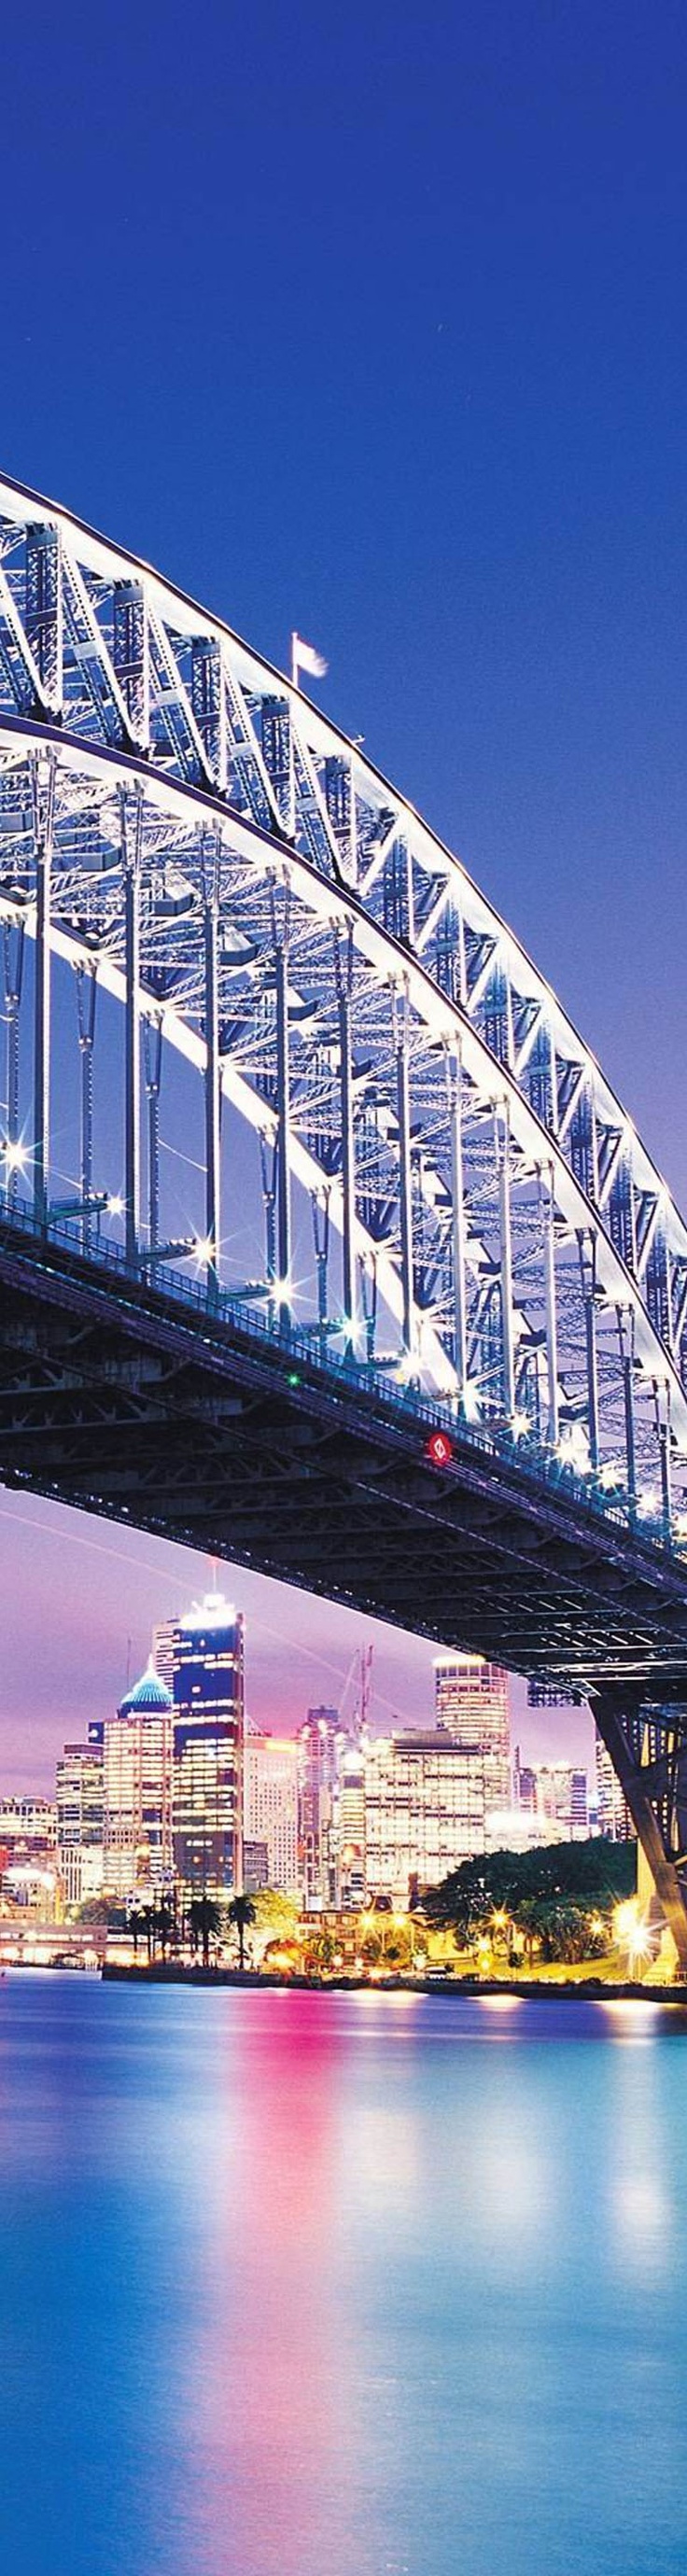 Sydney Harbour Bridge. NSW, Australia